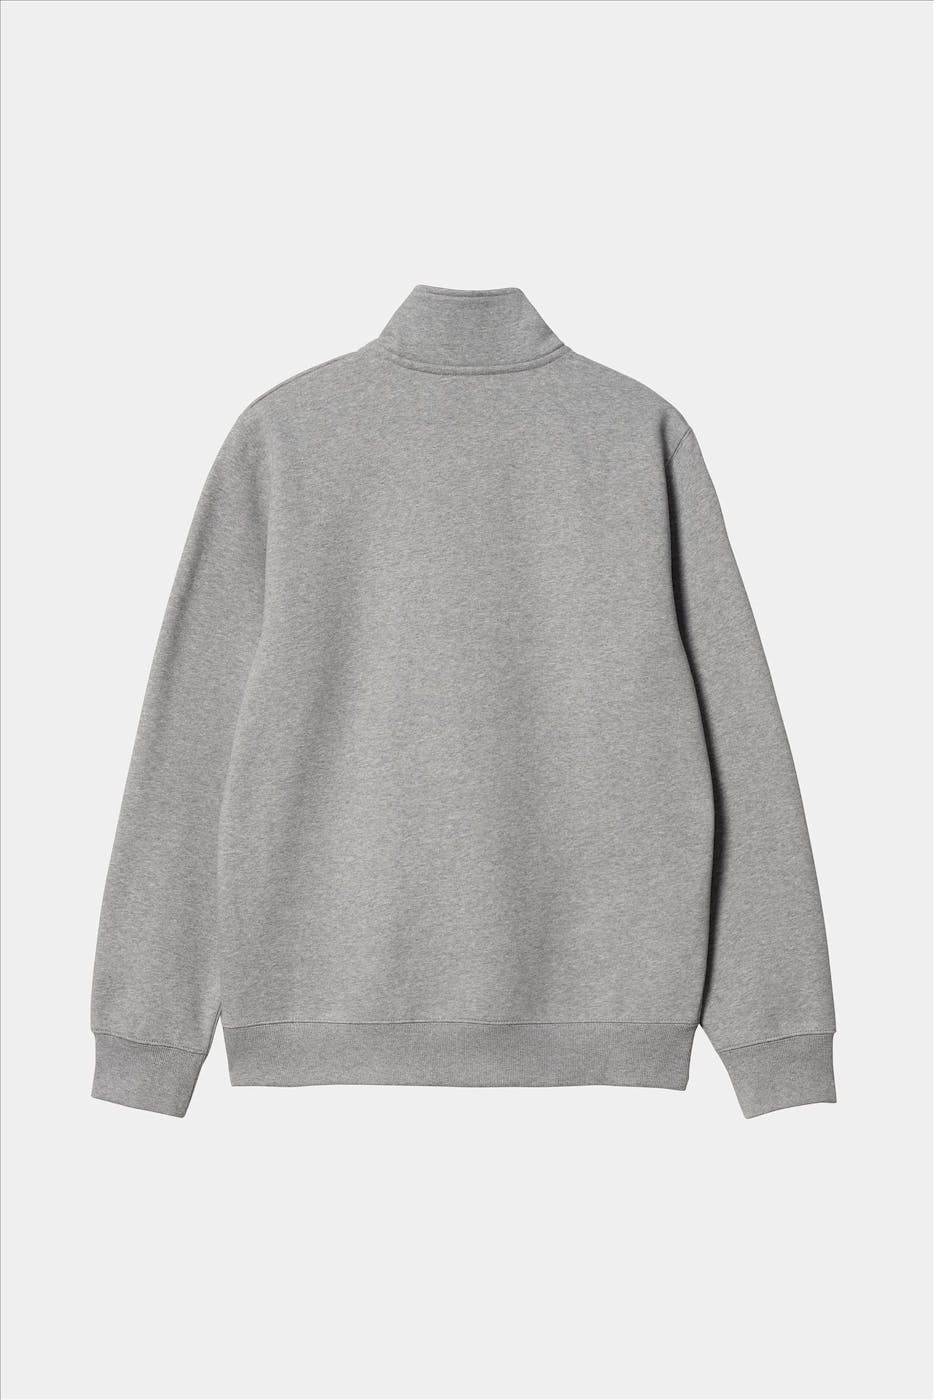 Carhartt WIP - Grijze Chase Neck Zip sweater